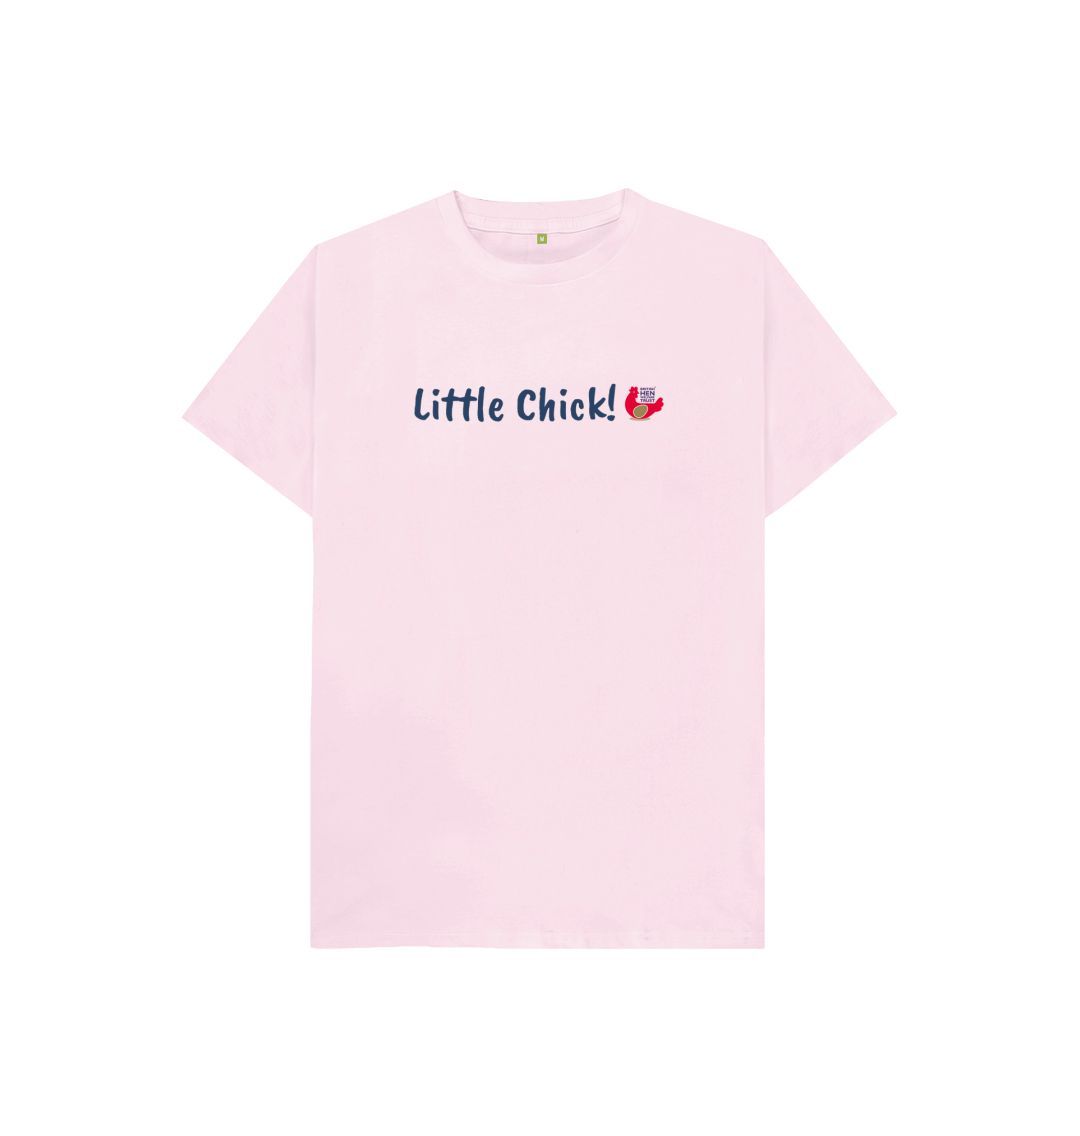 Pink Little Chick! Kids Unisex Short Sleeve T-Shirt